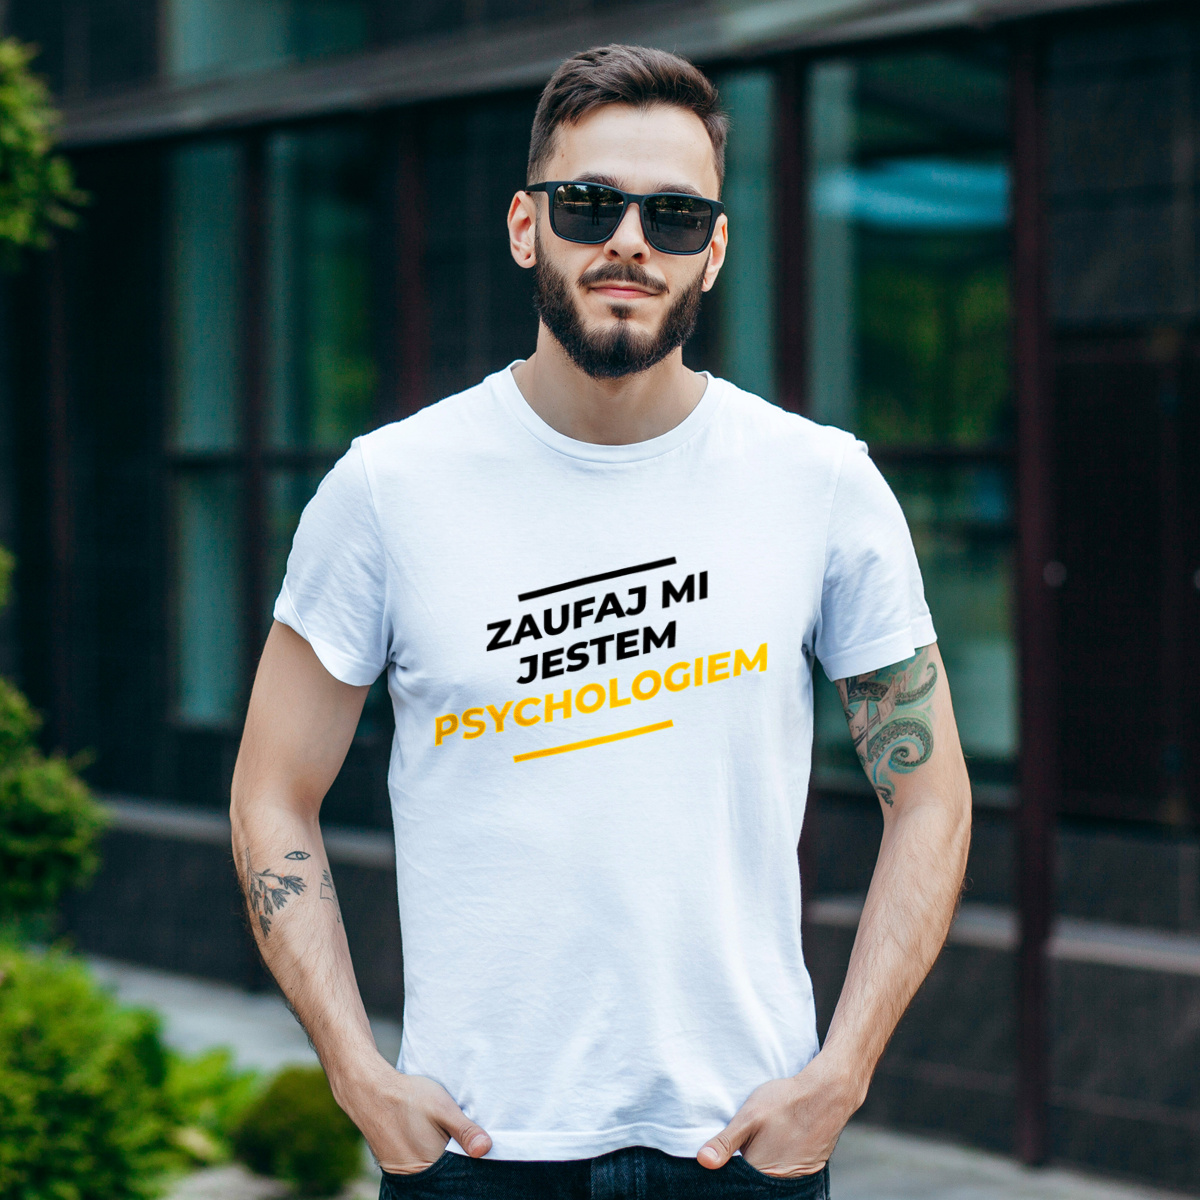 Zaufaj Mi Jestem Psychologiem - Męska Koszulka Biała